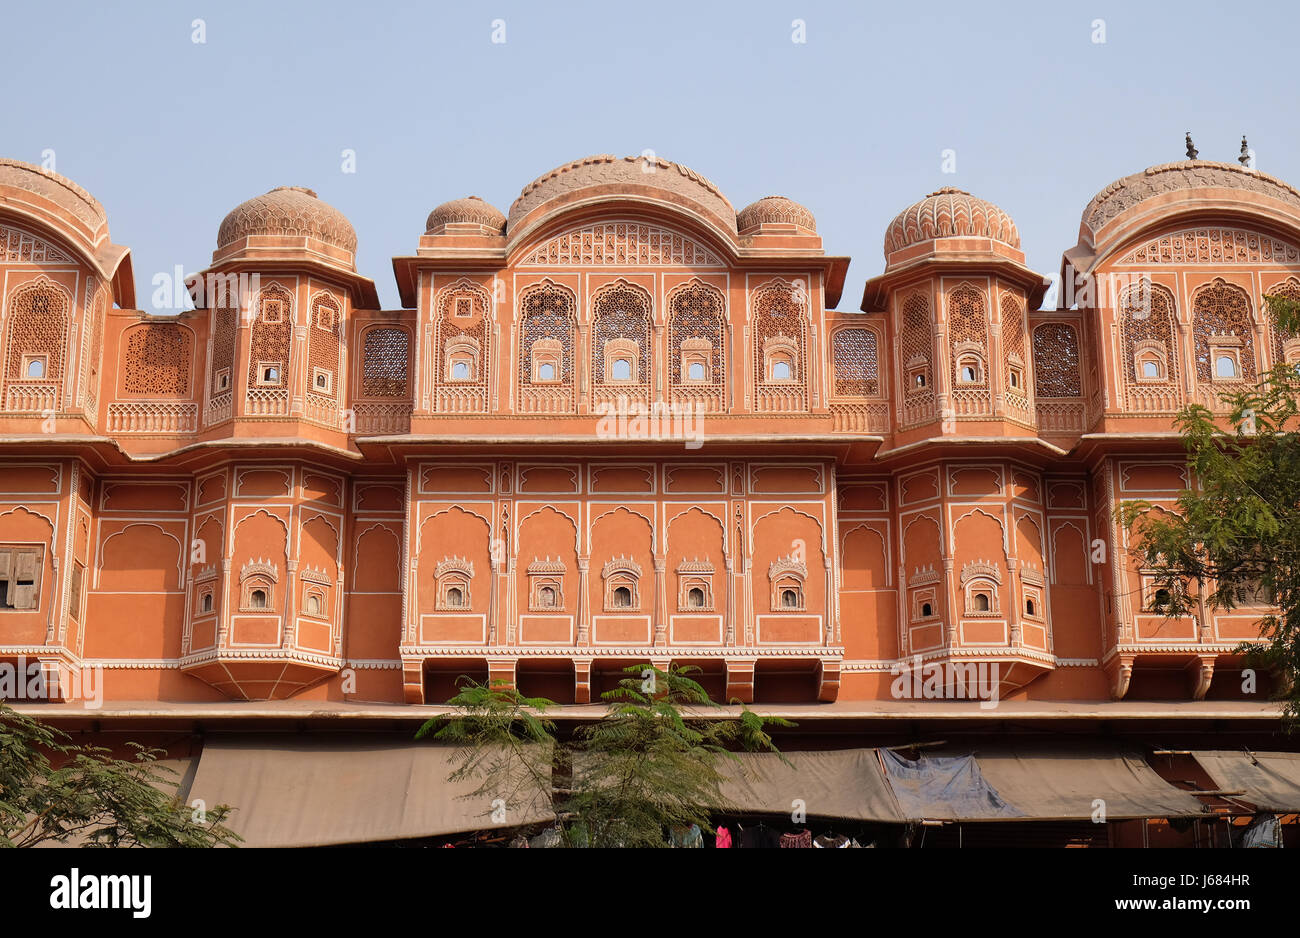 Detail des traditionellen Hauses in Jaipur, Rajasthan, Indien. Jaipur ist die Hauptstadt und größte Stadt von Rajasthan Stockfoto